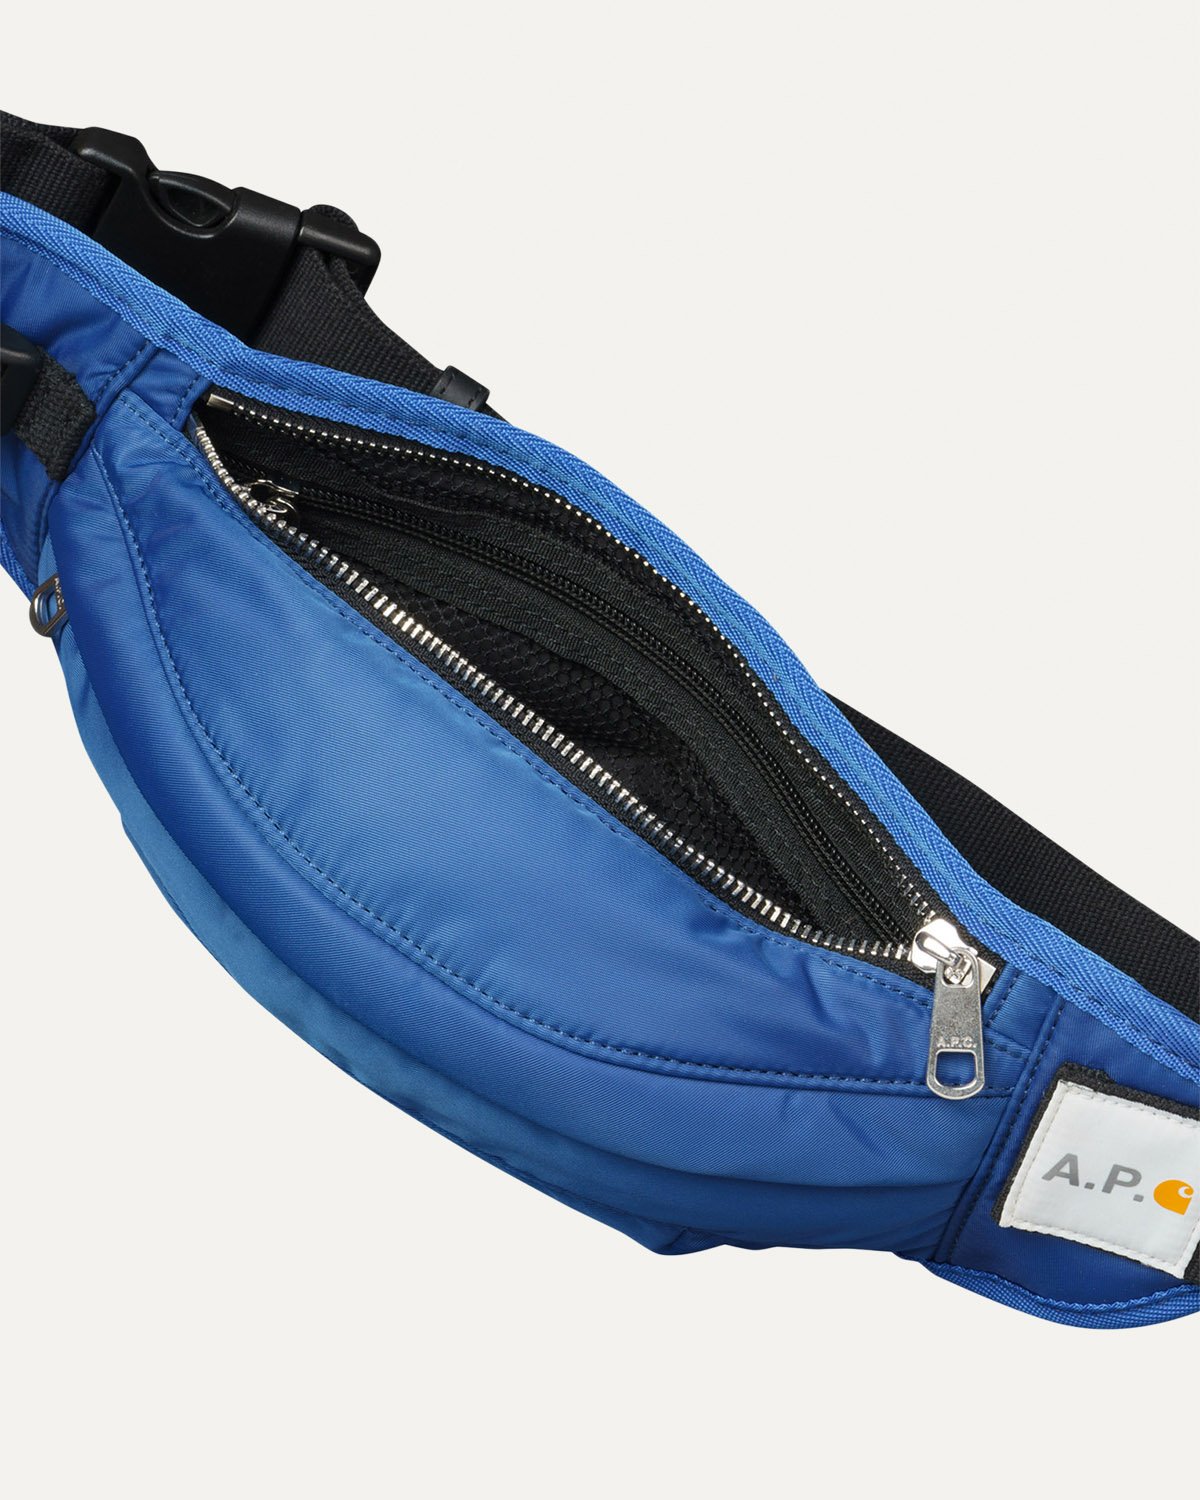 A.P.C. x Carhartt WIP - Shawn Hip Bag Indigo - Accessories - Blue - Image 4